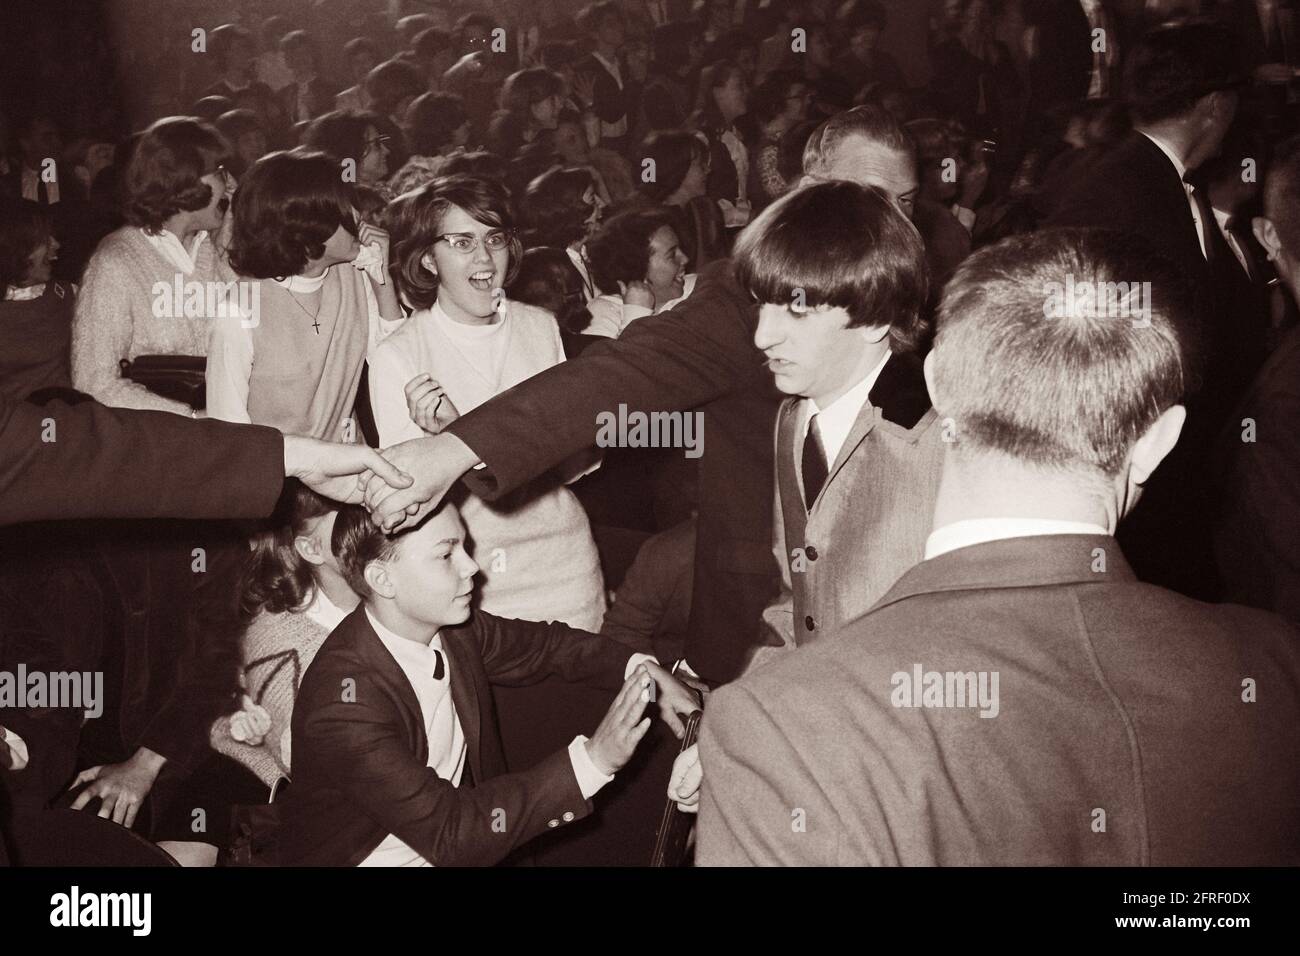 La police se joint à la main pour retenir les fans adoring tandis que Ringo Starr se promène au Washington Coliseum de Washington, D.C. où les Beatles jouaient dans leur premier concert américain le 11 février 1964. (ÉTATS-UNIS) Banque D'Images